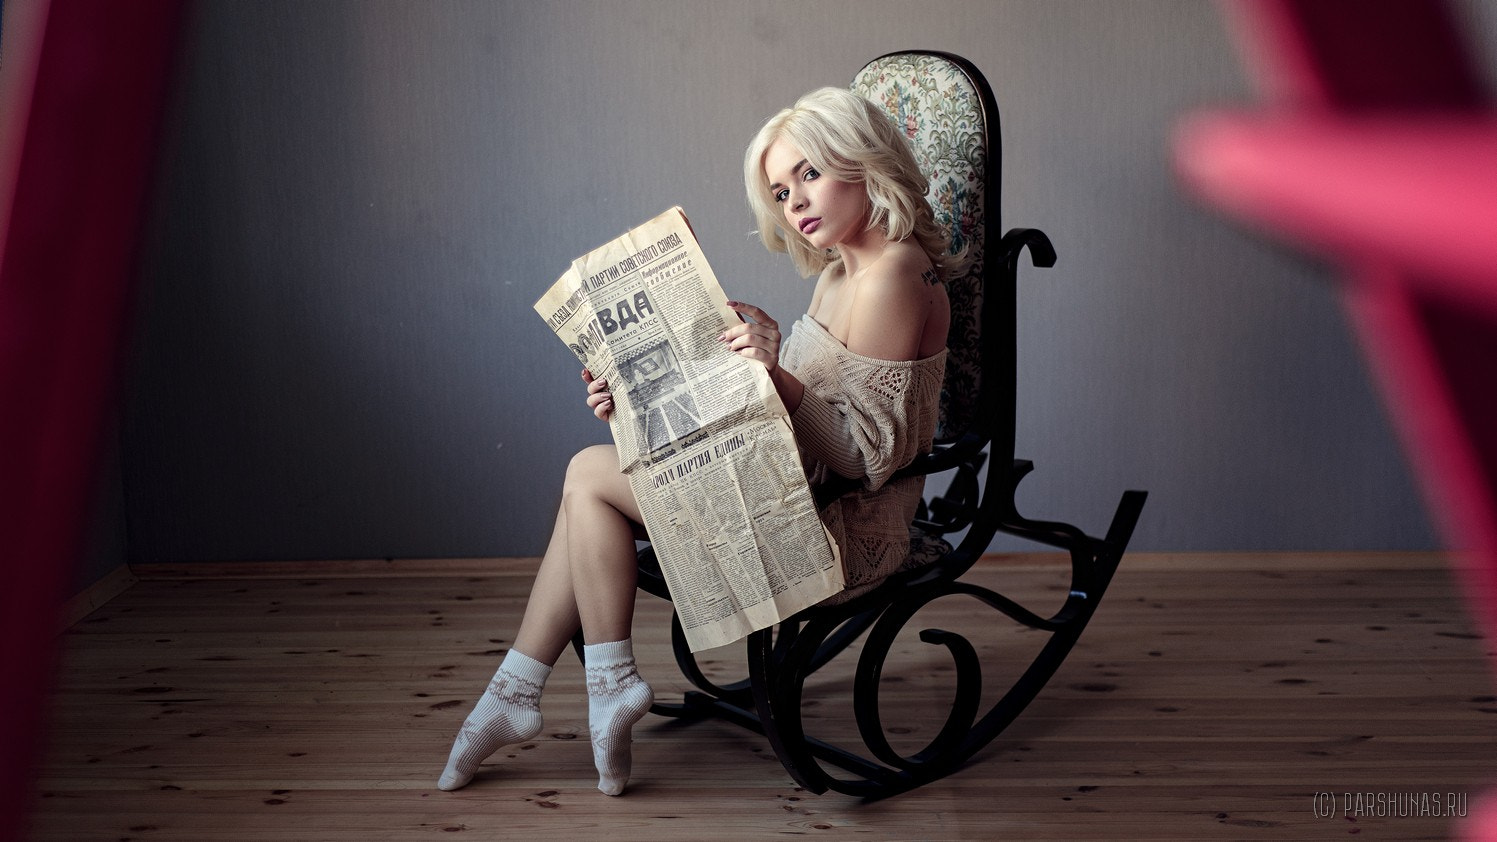 Women Blonde Bare Shoulders Socks Newspapers Sweater Kristina Mamatyukova Anton Parshunas Reading 1497x842